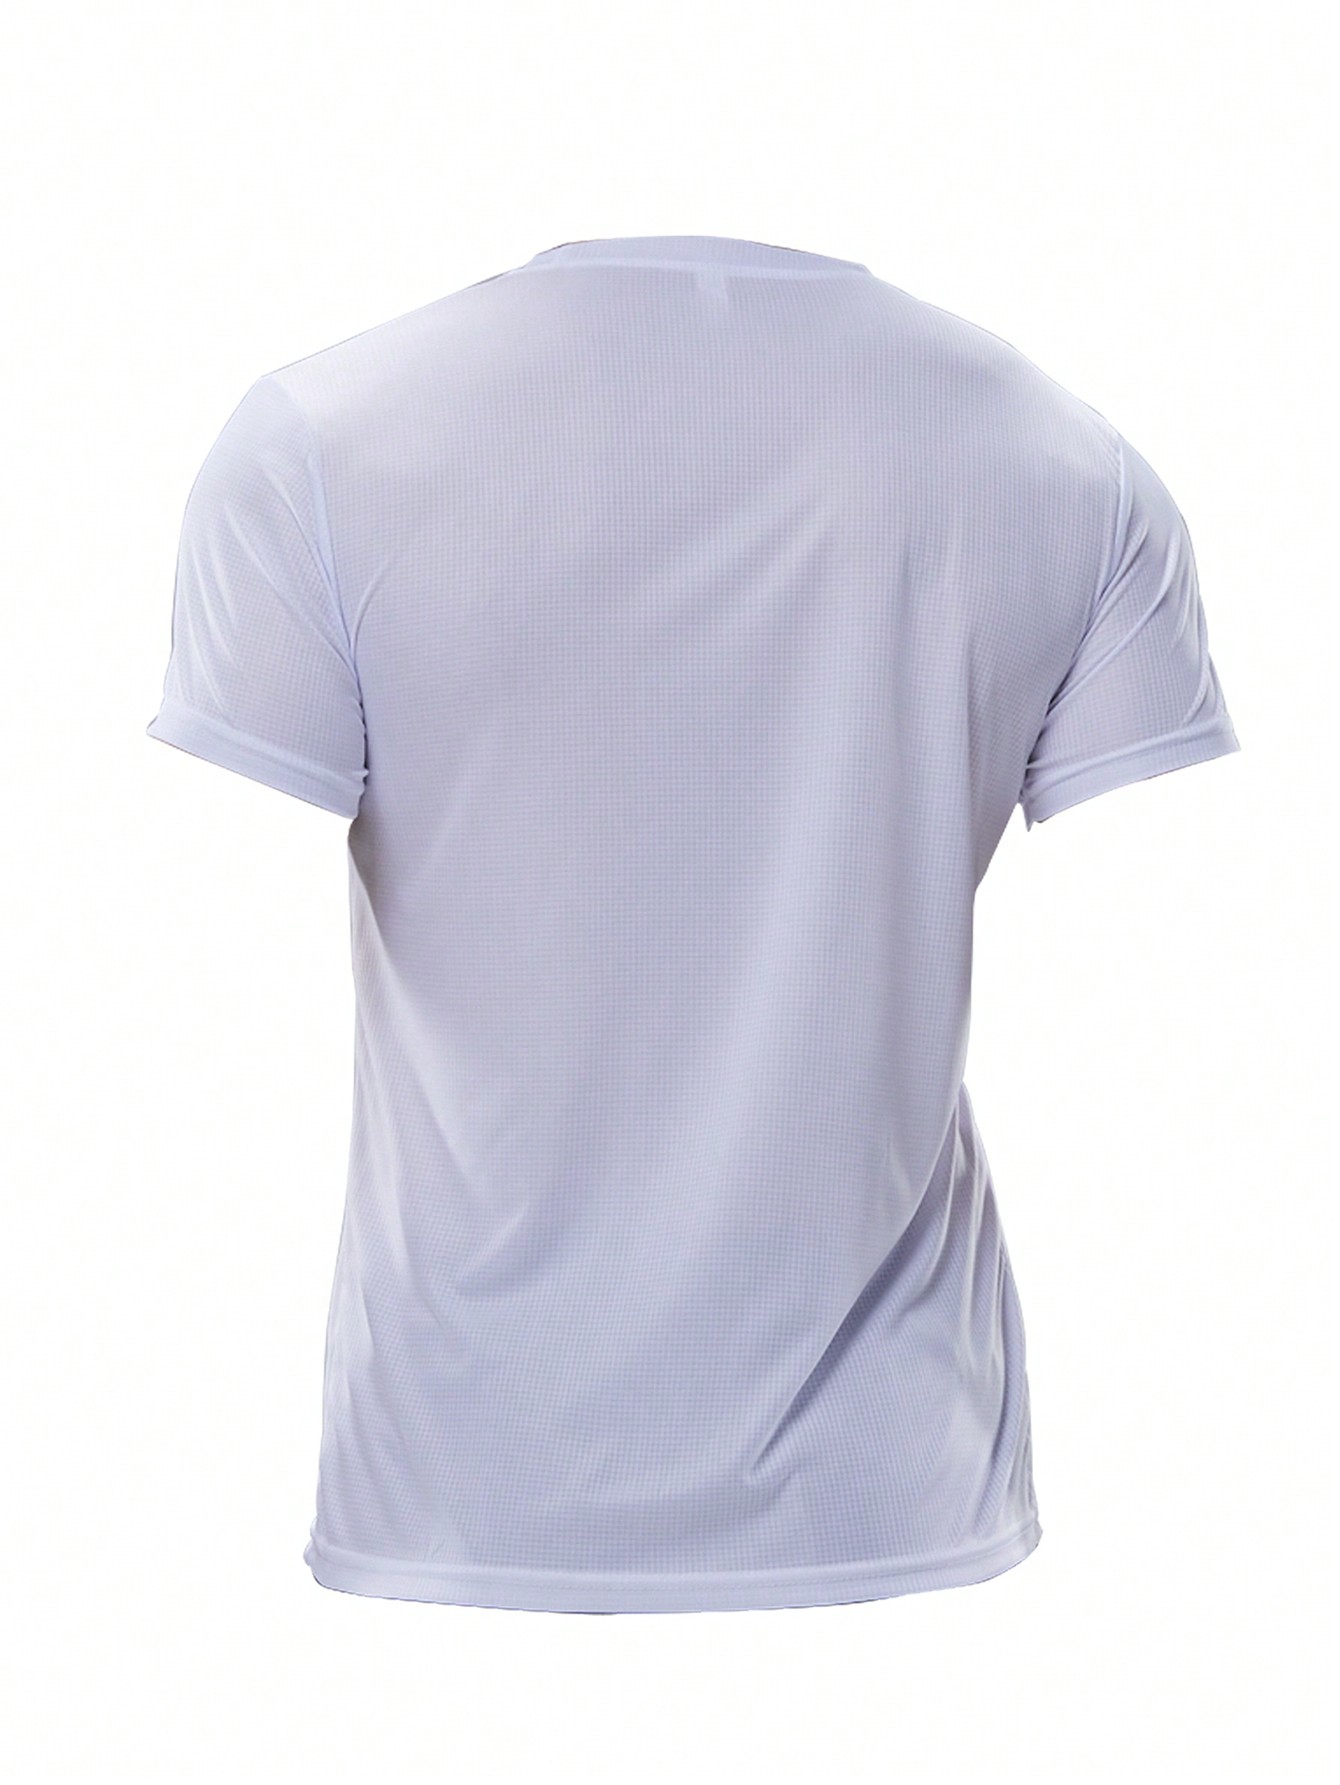 2 шт. комплект свободных футболок с короткими рукавами для тренировок и бега для мужчин, белый мужская футболка для спортзала футболка для фитнеса бодибилдинга тренировок мужская летняя спортивная футболка для бега мужская футбол